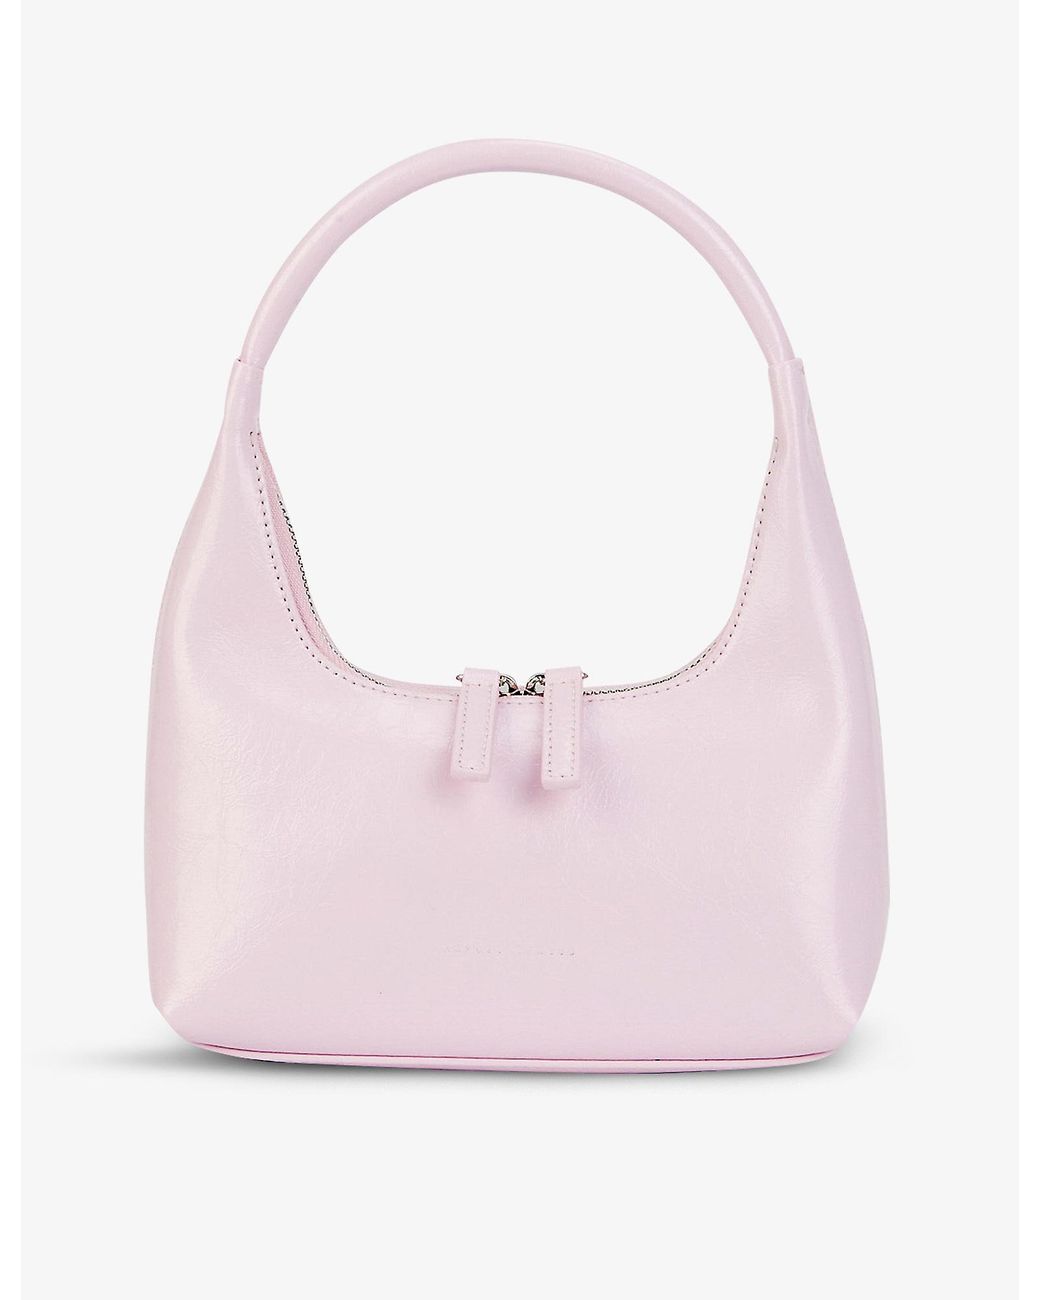 Marge Sherwood Hobo Mini Crinkled Leather Shoulder Bag in Pink | Lyst